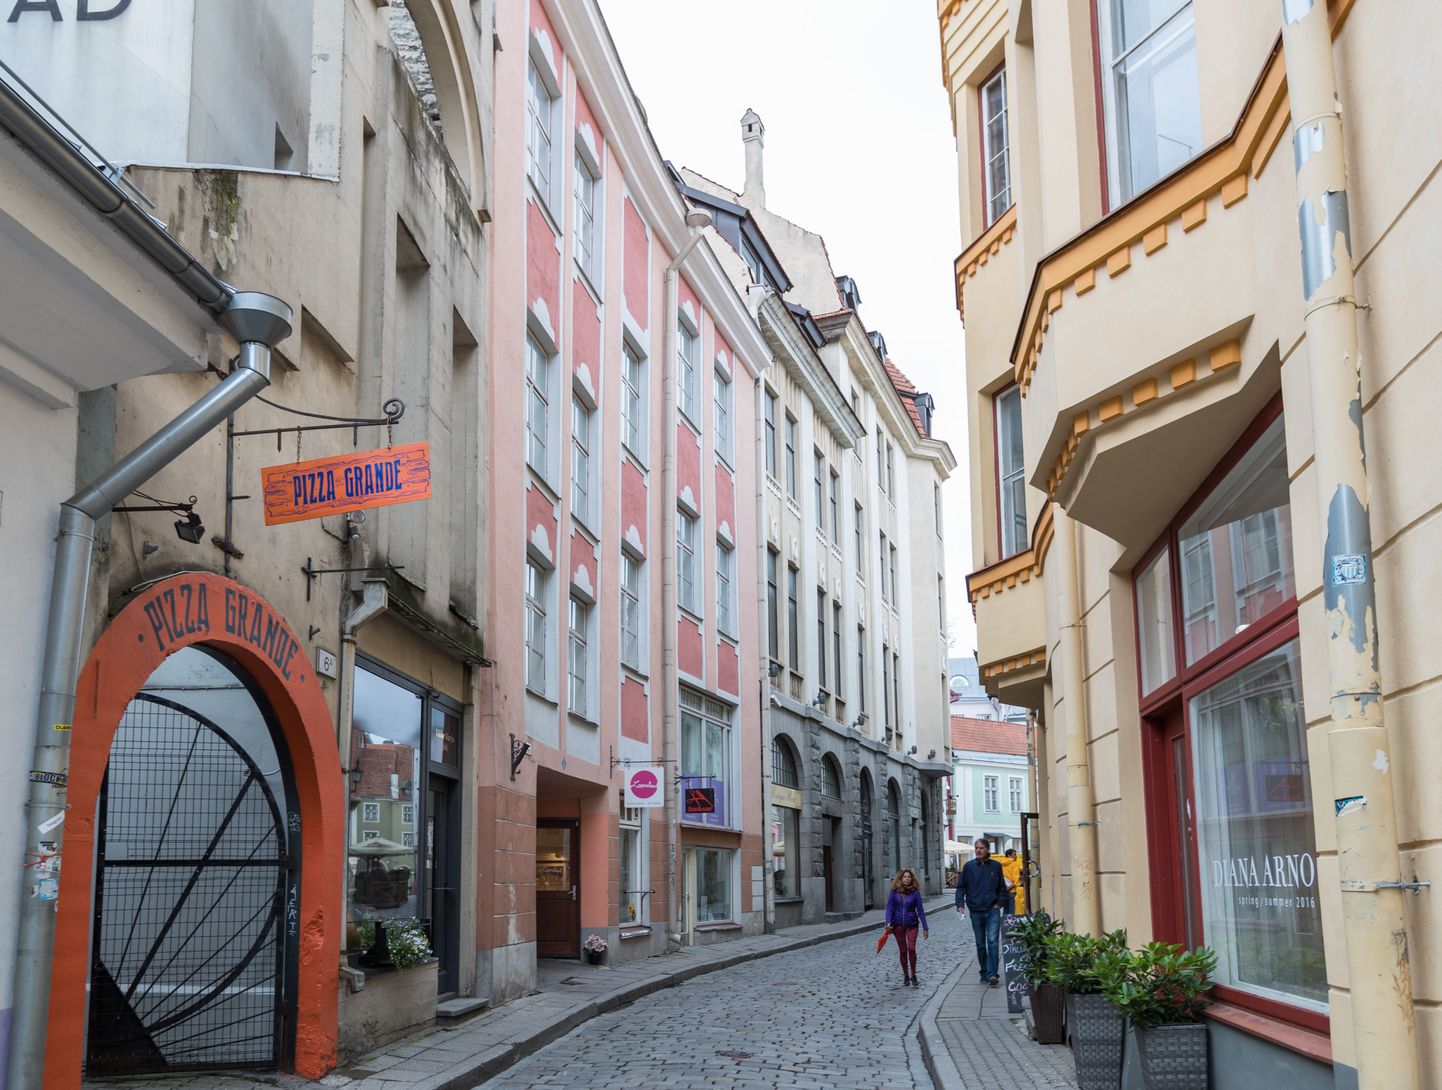 Tallinn, Eesti, 07.07.2016
Väike-Karja tänav. Jalakäijad, vanalinn, tänav.
FOTO: MIHKEL MARIPUU/POSTIMEES